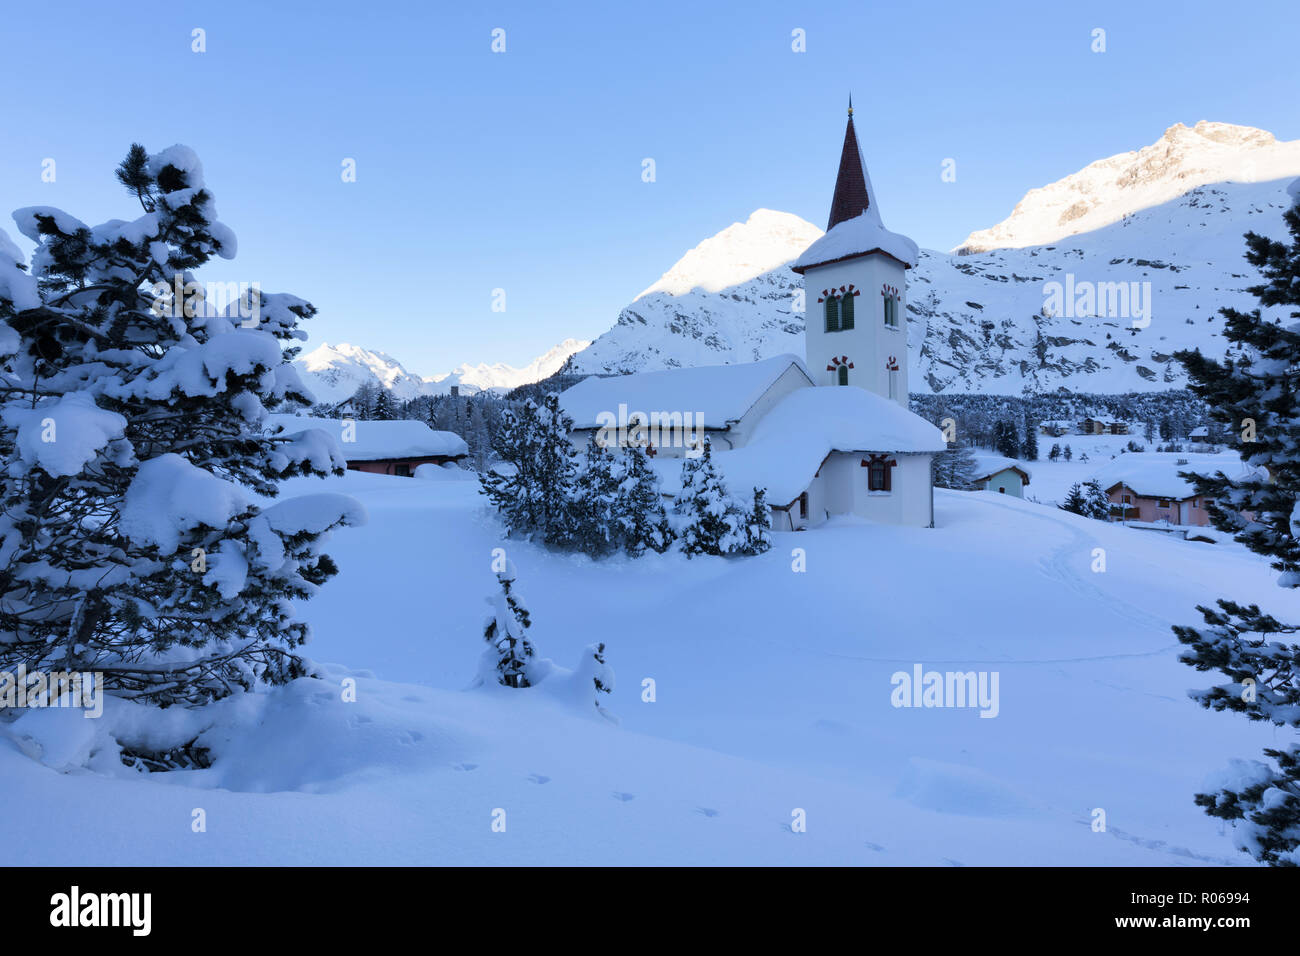 Chiesa bianca circondata da neve, sci di fondo Maloja, Val Bregaglia, Engadina nel Cantone dei Grigioni, Svizzera, Europa Foto Stock